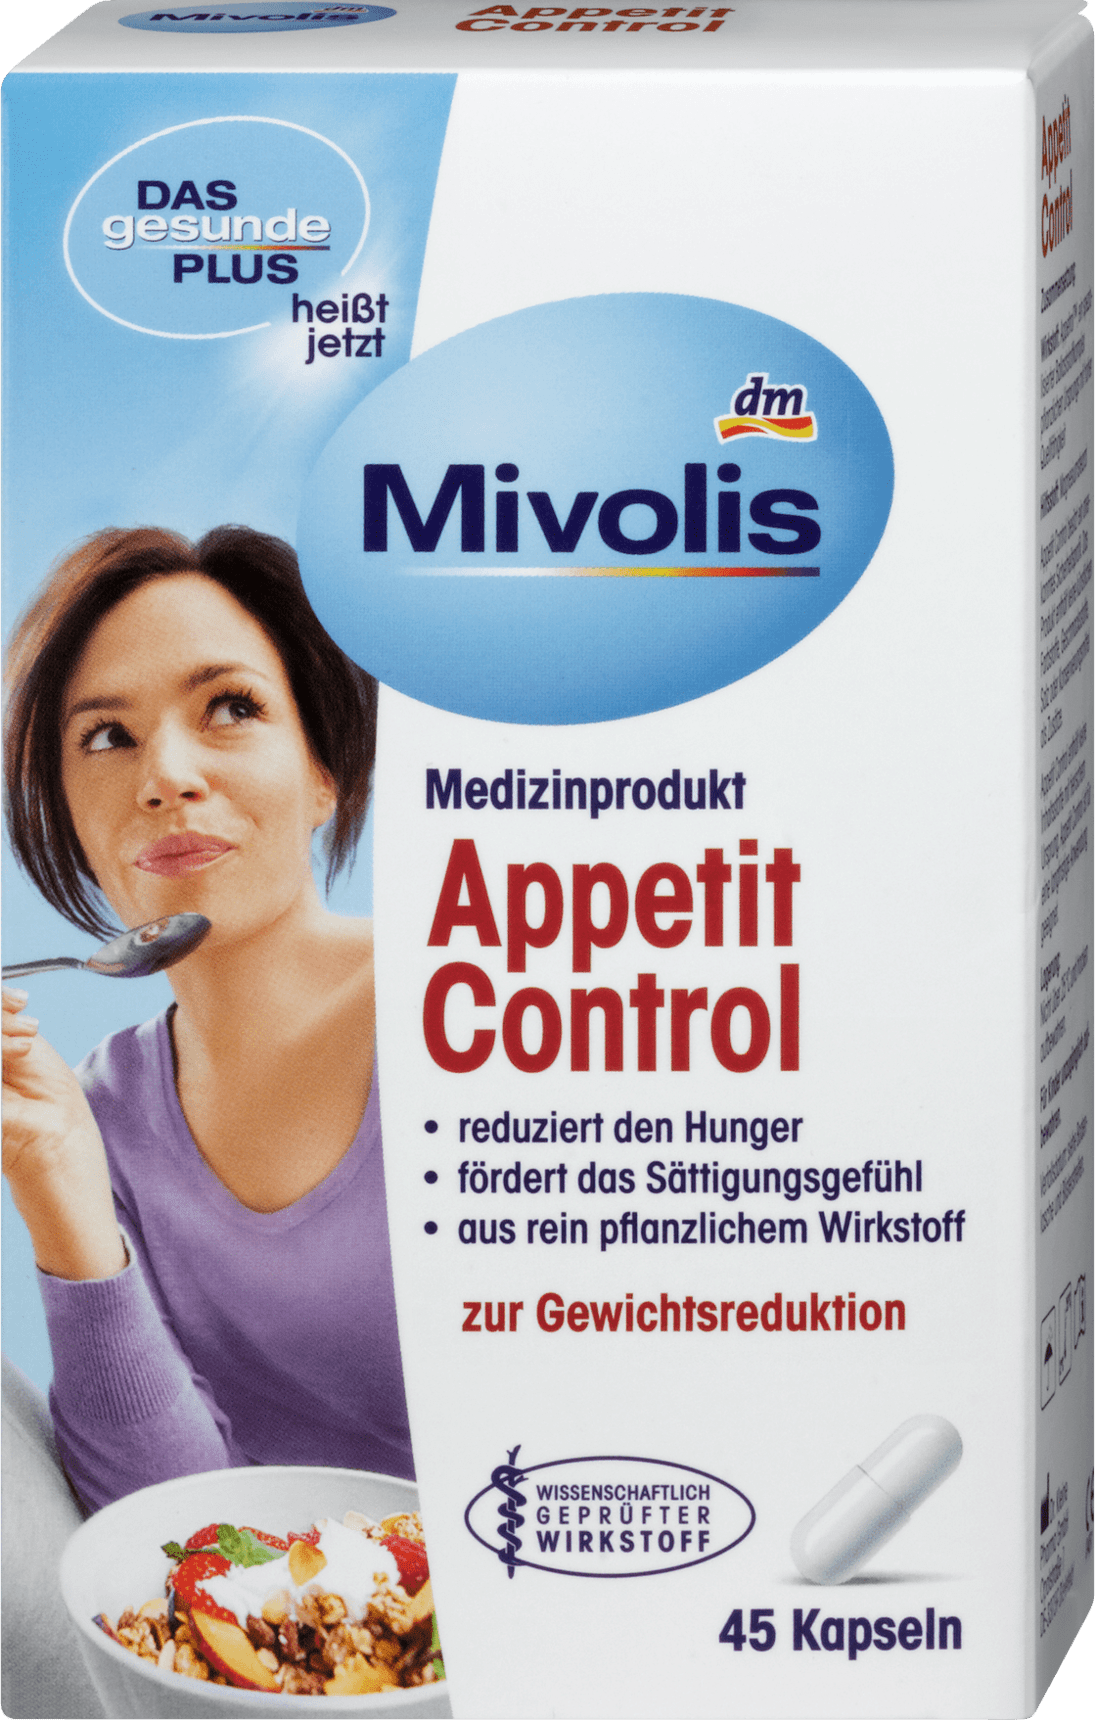 Mivolis Active fat metabolism capsules 45 capsules